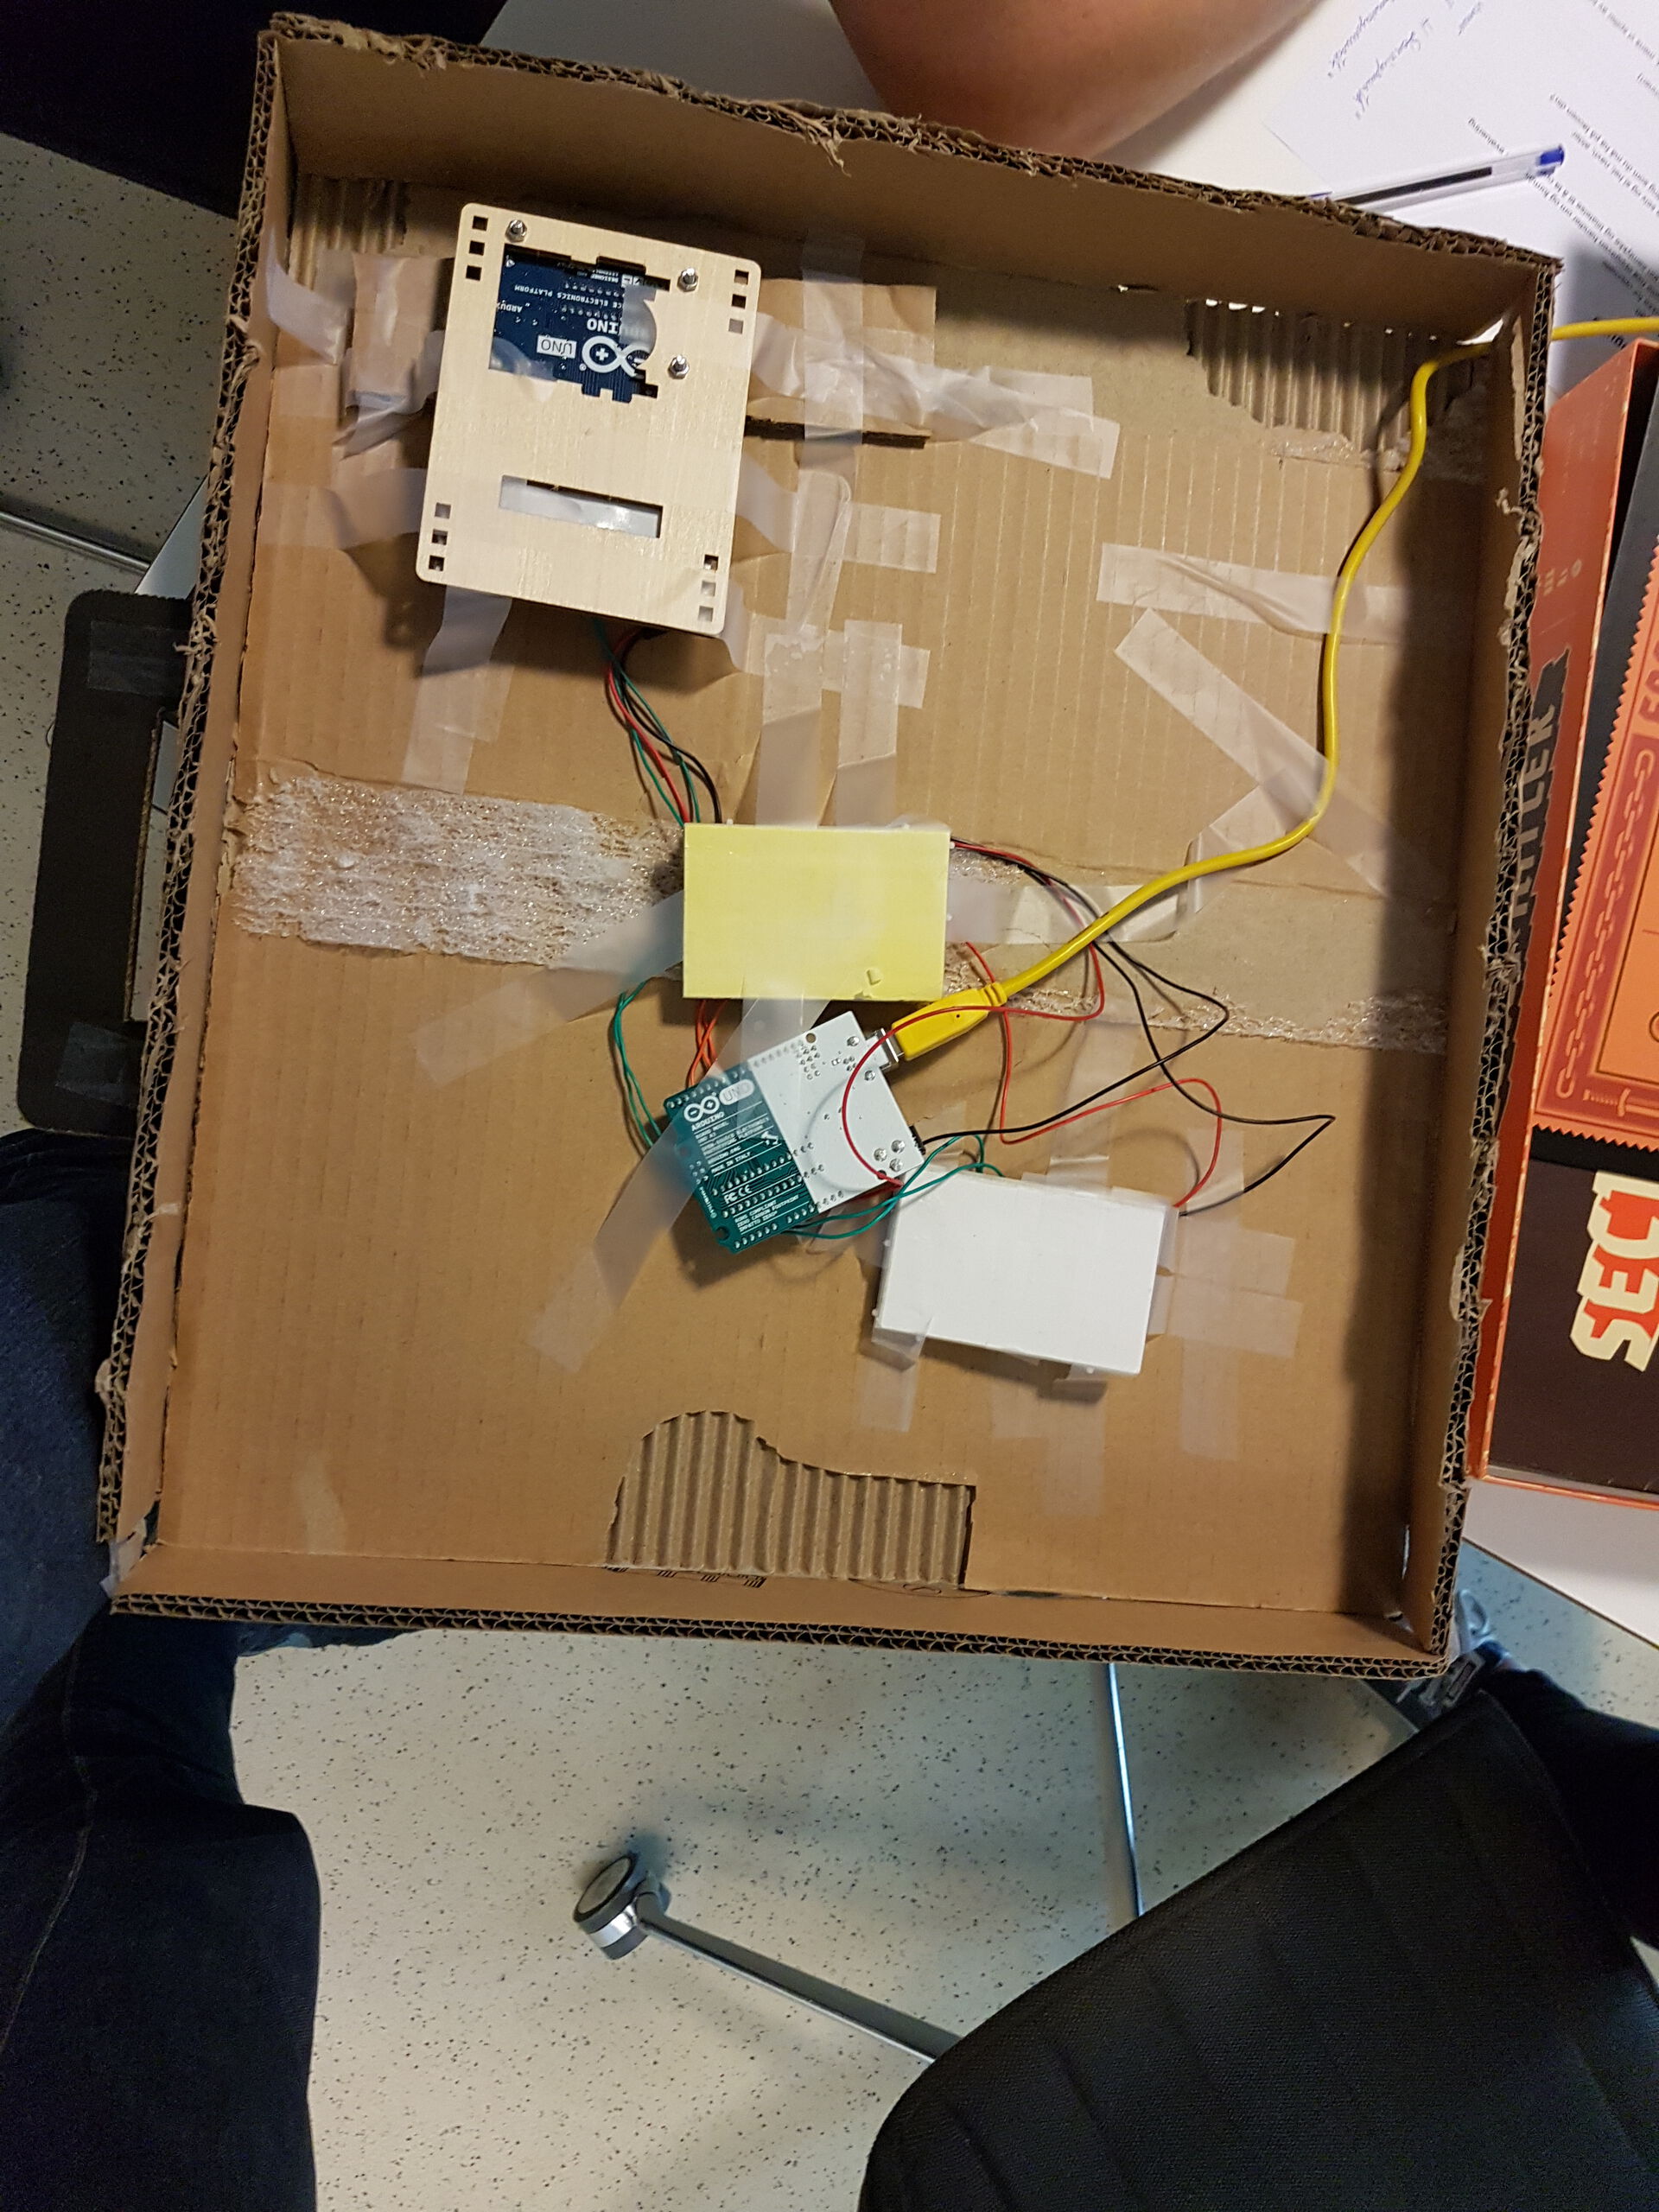 Undersiden av samme boks som i bildet over, viser en arduino med tre breadboards koblet til.